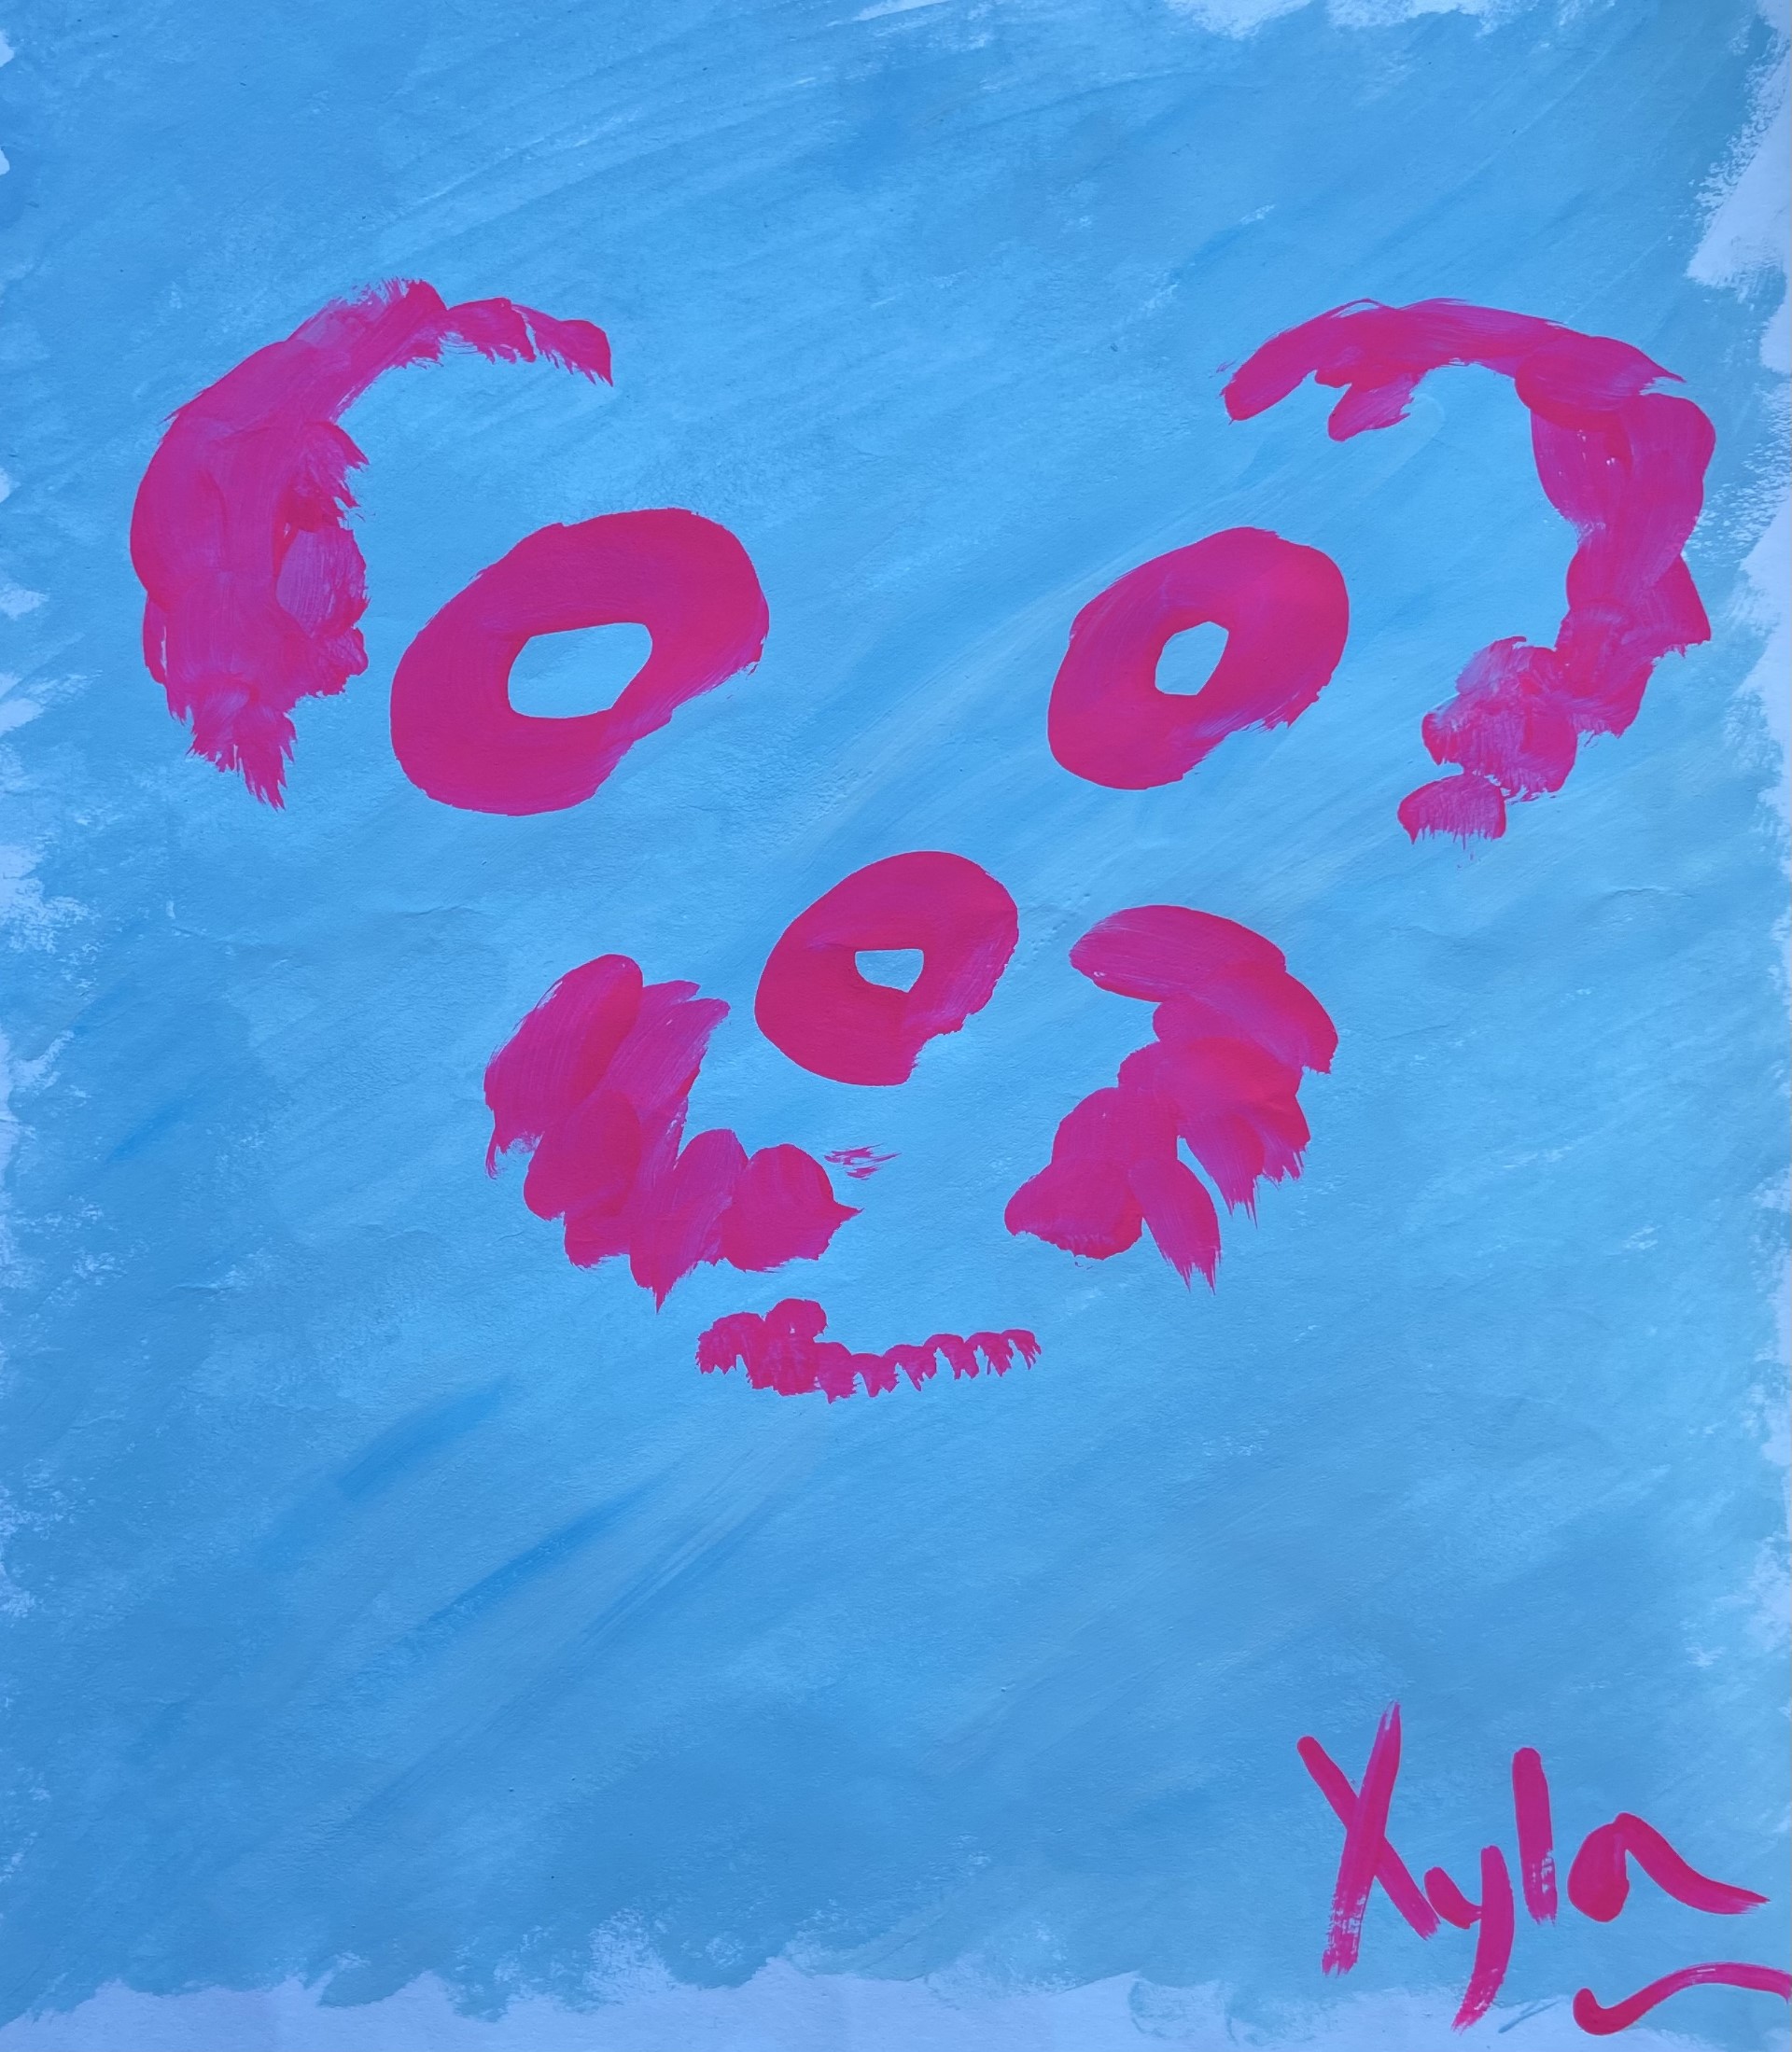 Minimalist Xyla blue and pink by Betty Adamou